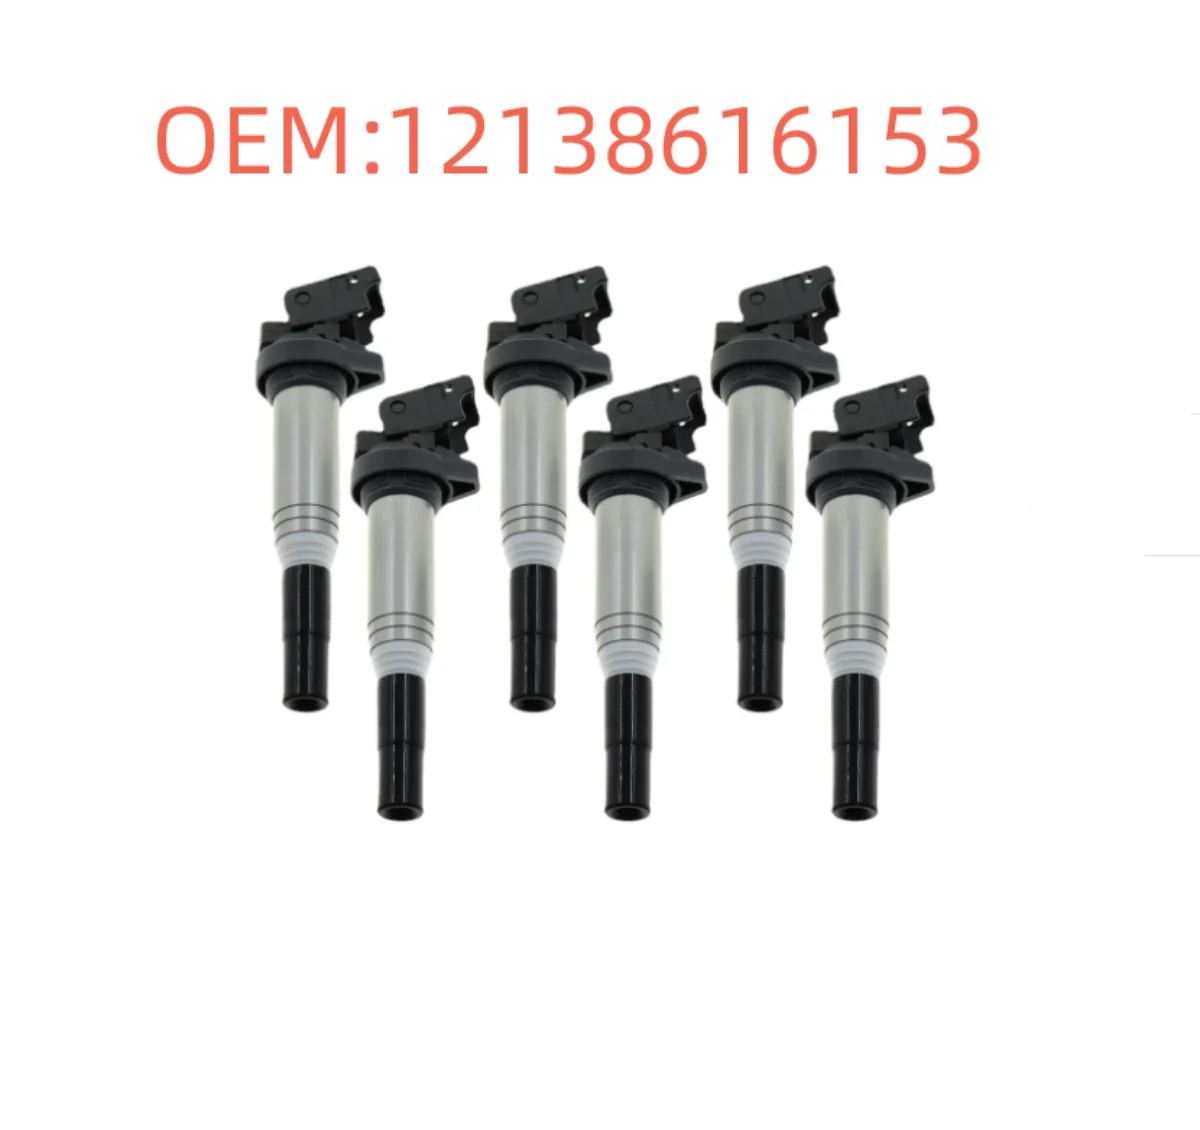 

6x 12138616153 Ignition Coil Ignition System For BMW E81 E87 F20 E90 F30 F35 E60 F10 F07 F01 F02 F02 E70 E71 F15 F25 12137594596